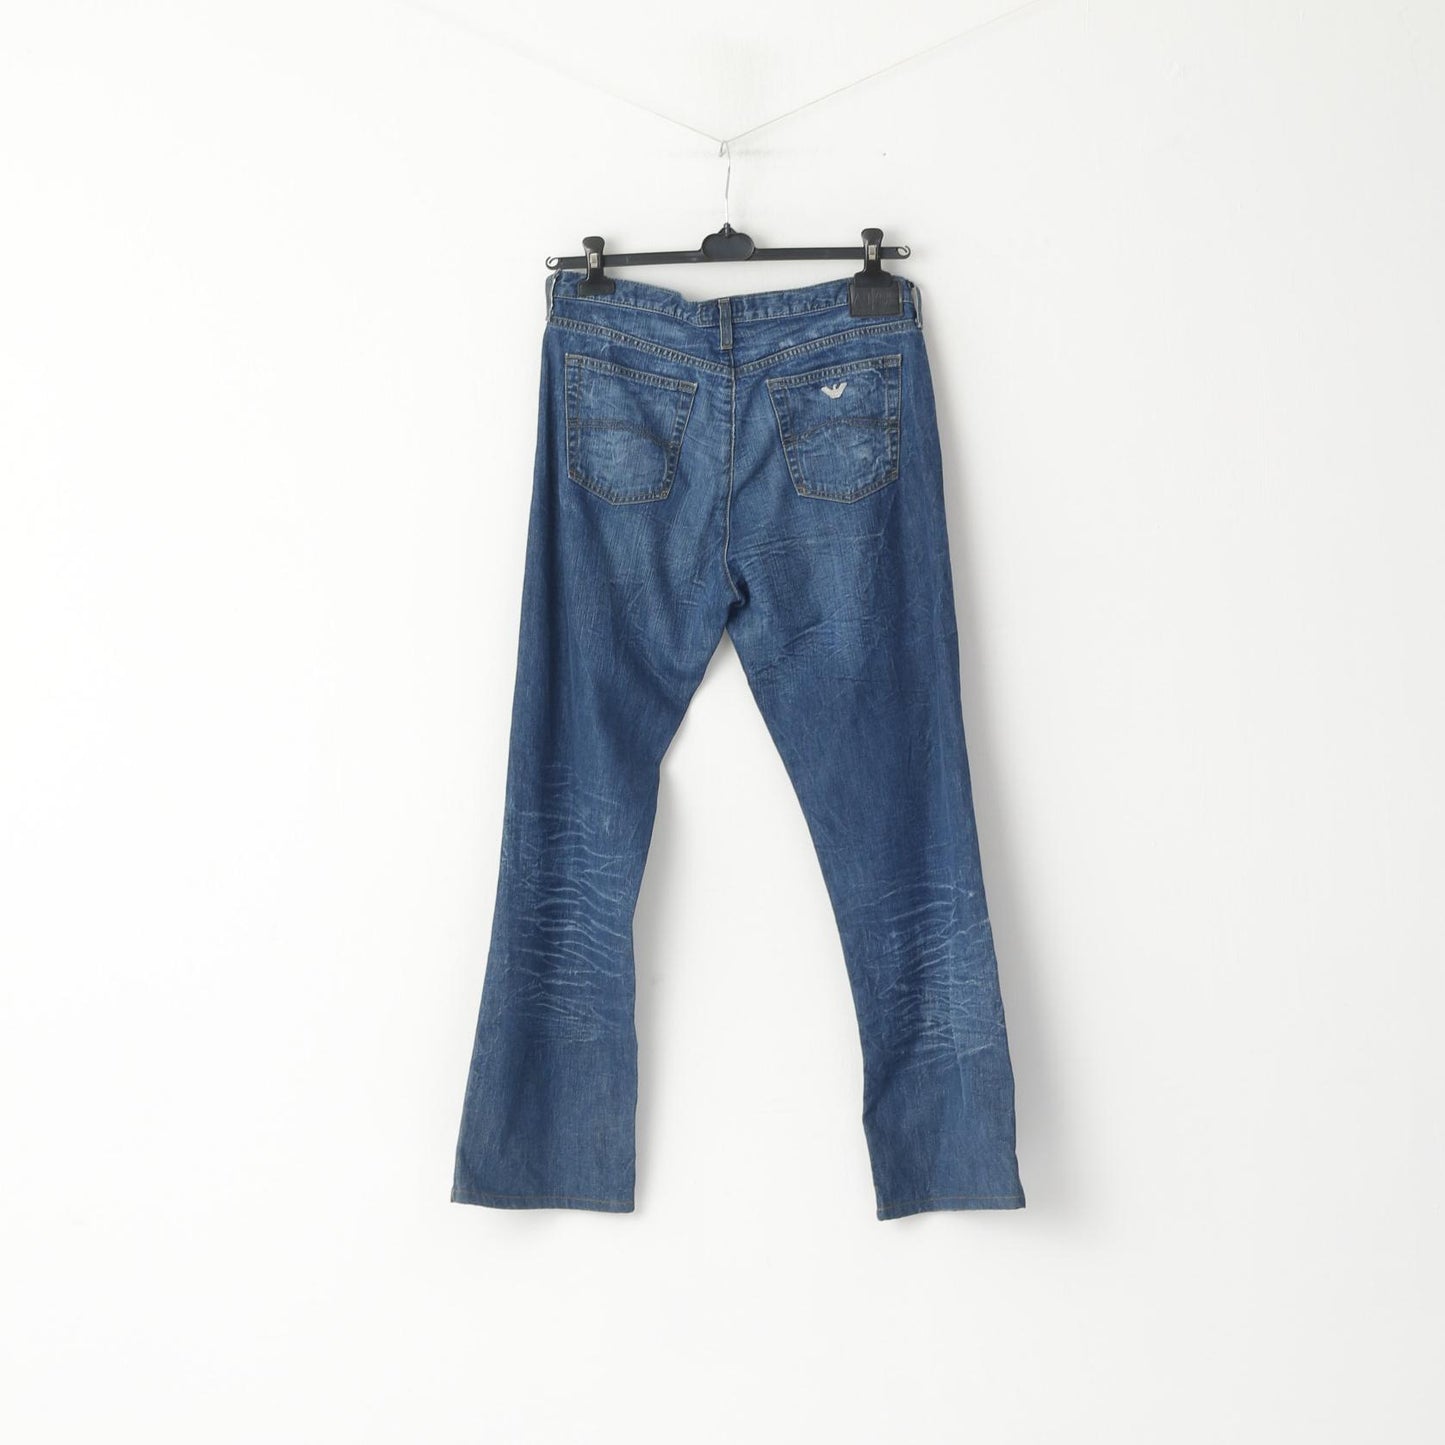 Armani Jeans Pantalon Jeans 31 pour Homme Pantalon en Denim de Coton Bleu Marine Fabriqué en Italie